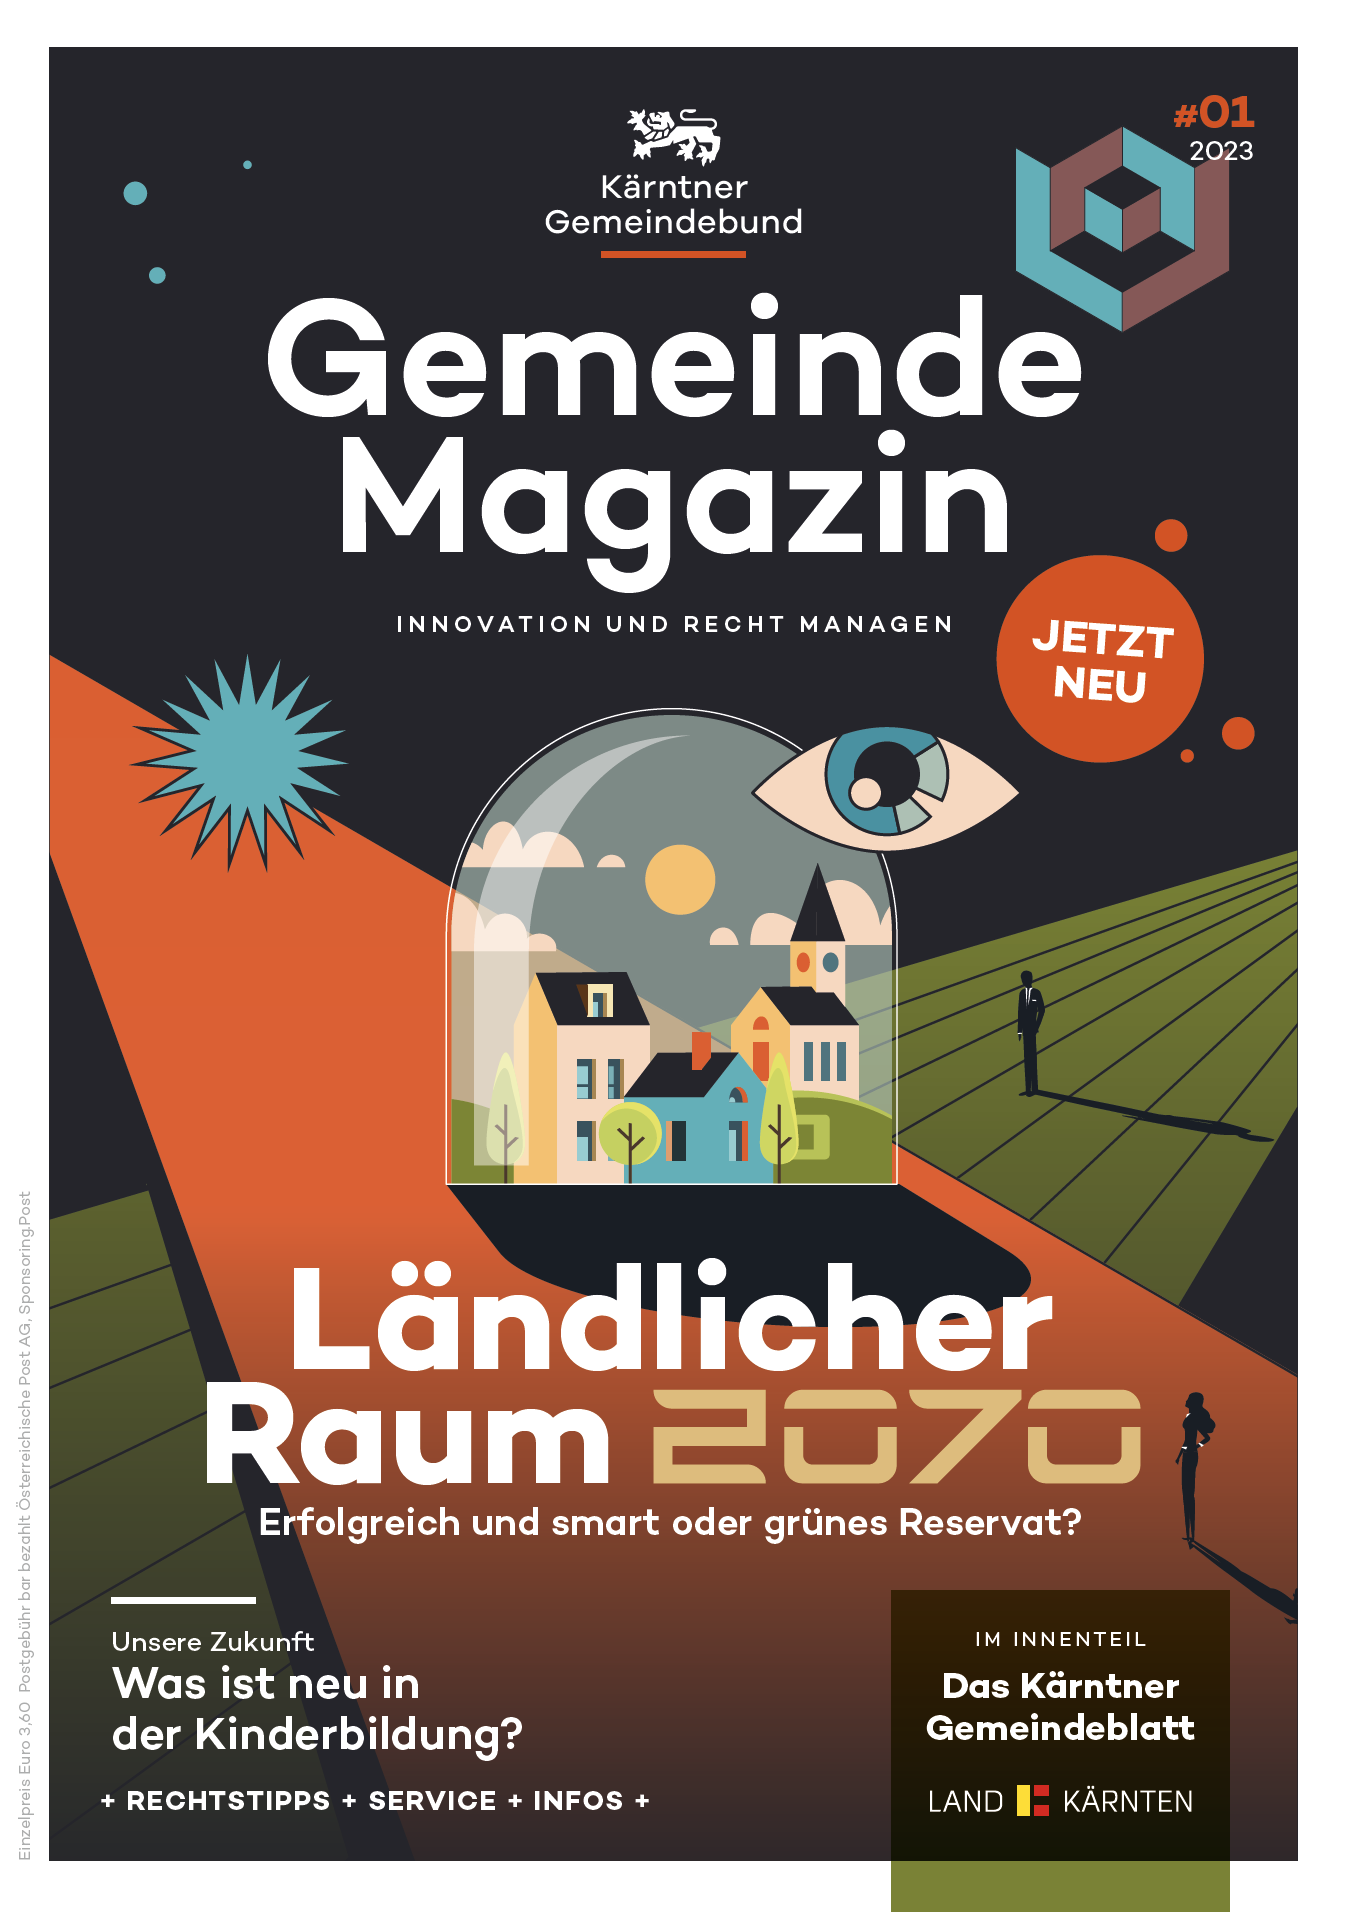 Kärntner Gemeindebund Gemeindemagazin Ausgabe 01 von 2023 zum Thema Ländlicher Raum